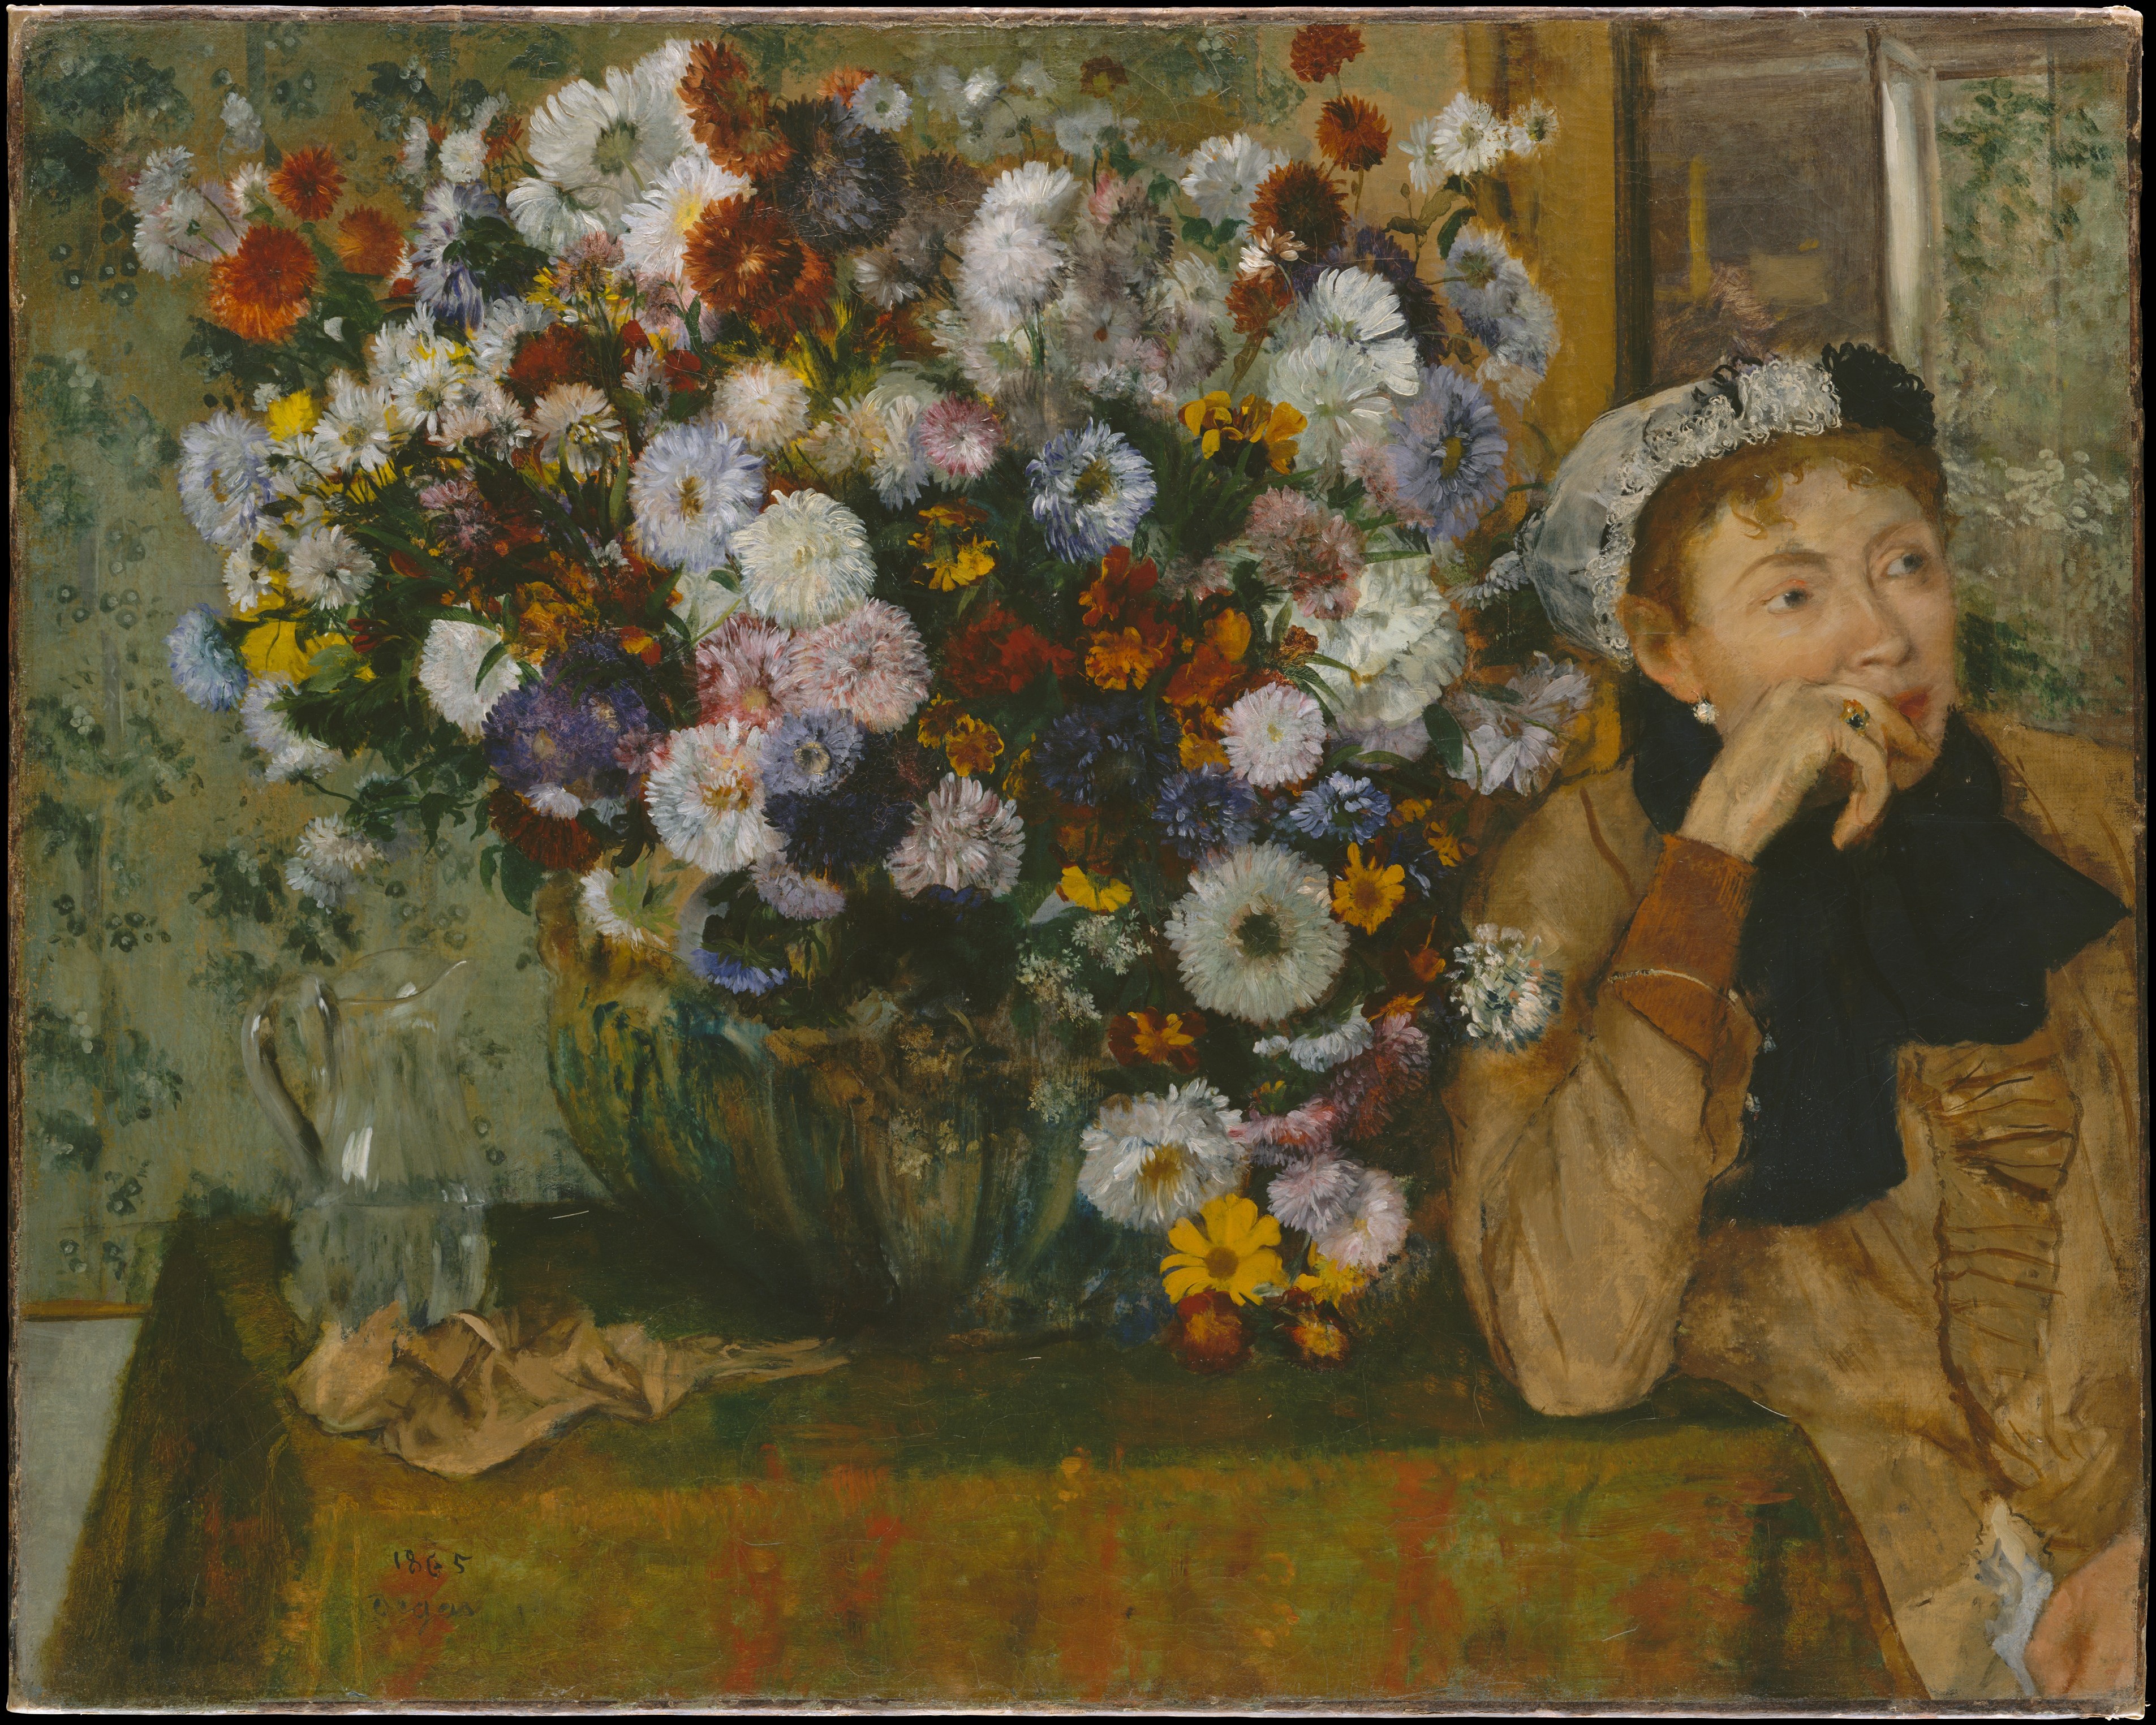 坐在花瓶旁的女人 (保羅·瓦平松夫人?) by Edgar Degas - 1865年 - 73.7 x 92.7 cm 